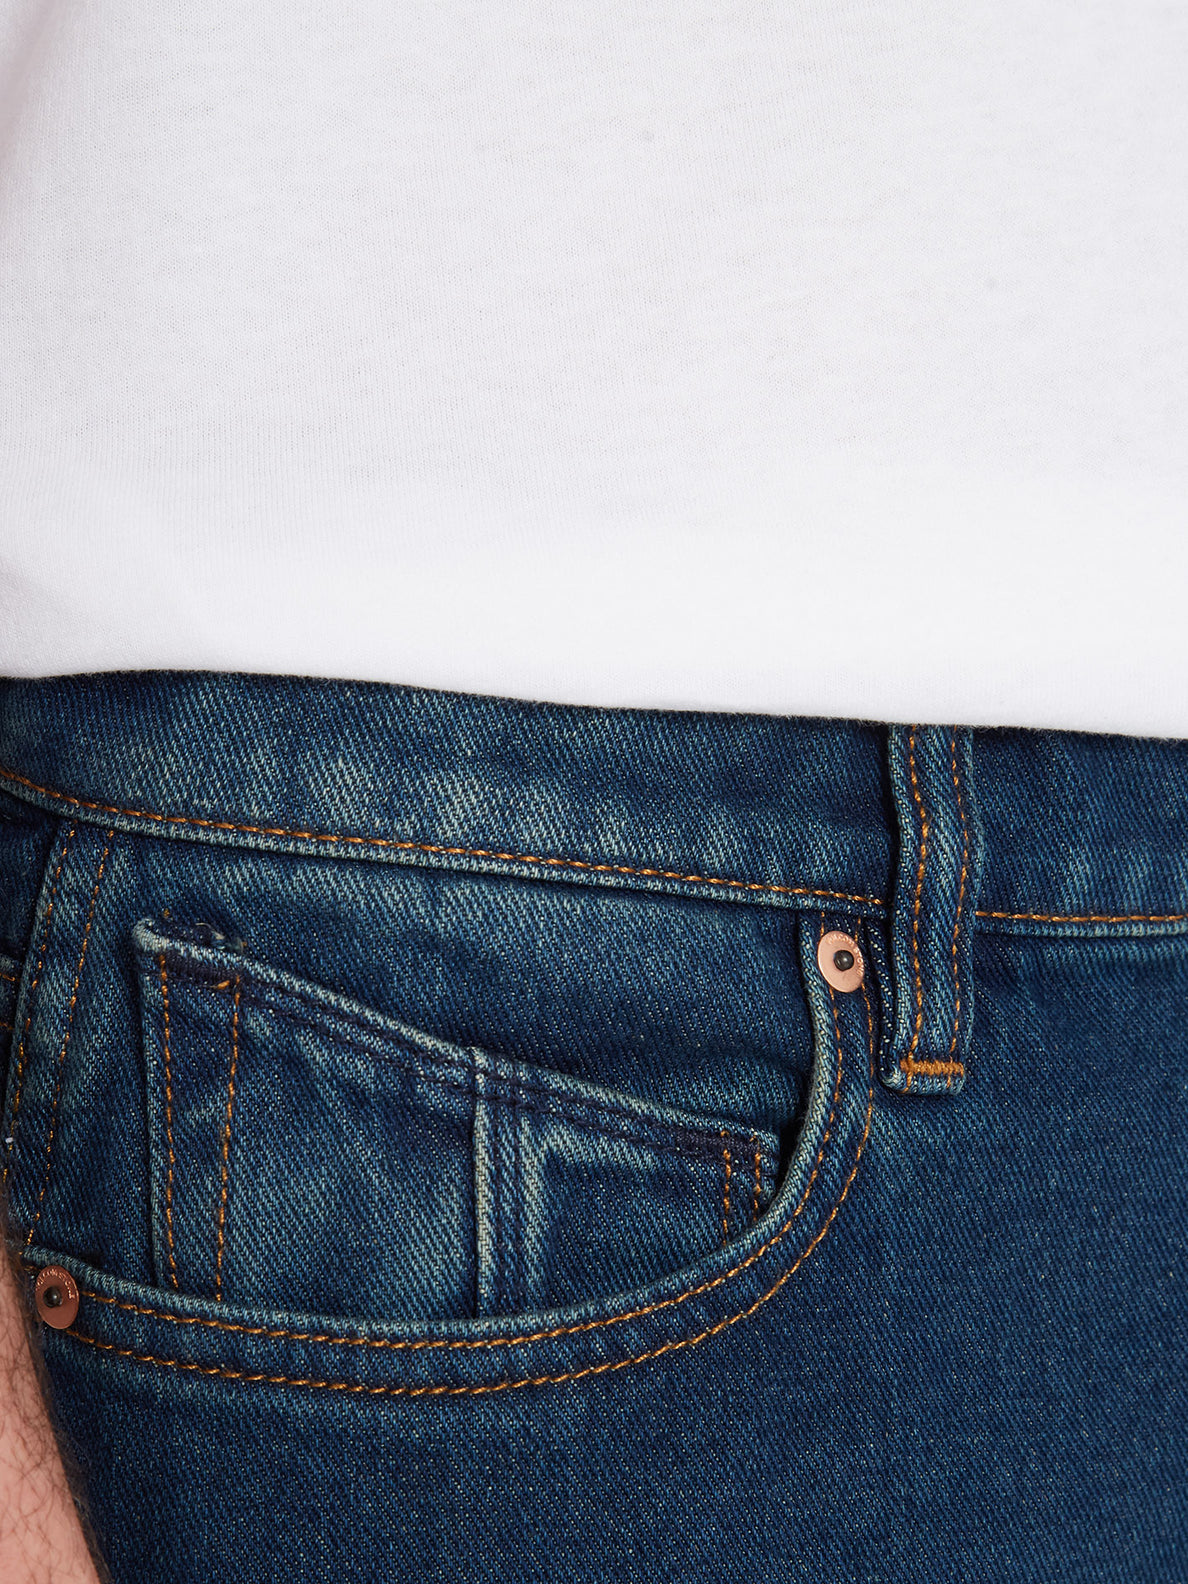 Nailer Jeans - MATURED BLUE - Men - Volcom EU – Volcom Europe